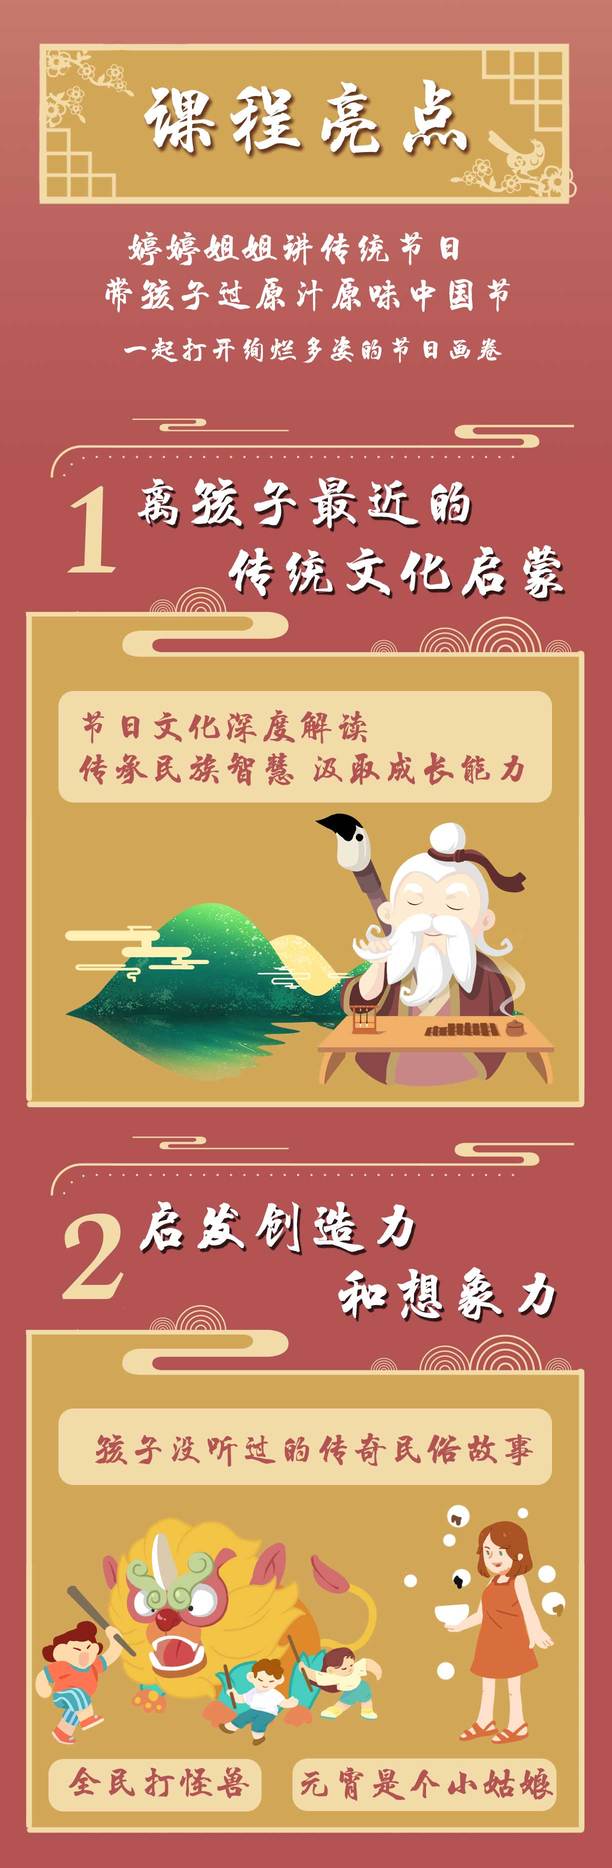 婷婷传统节日：给孩子的节日文化大百科